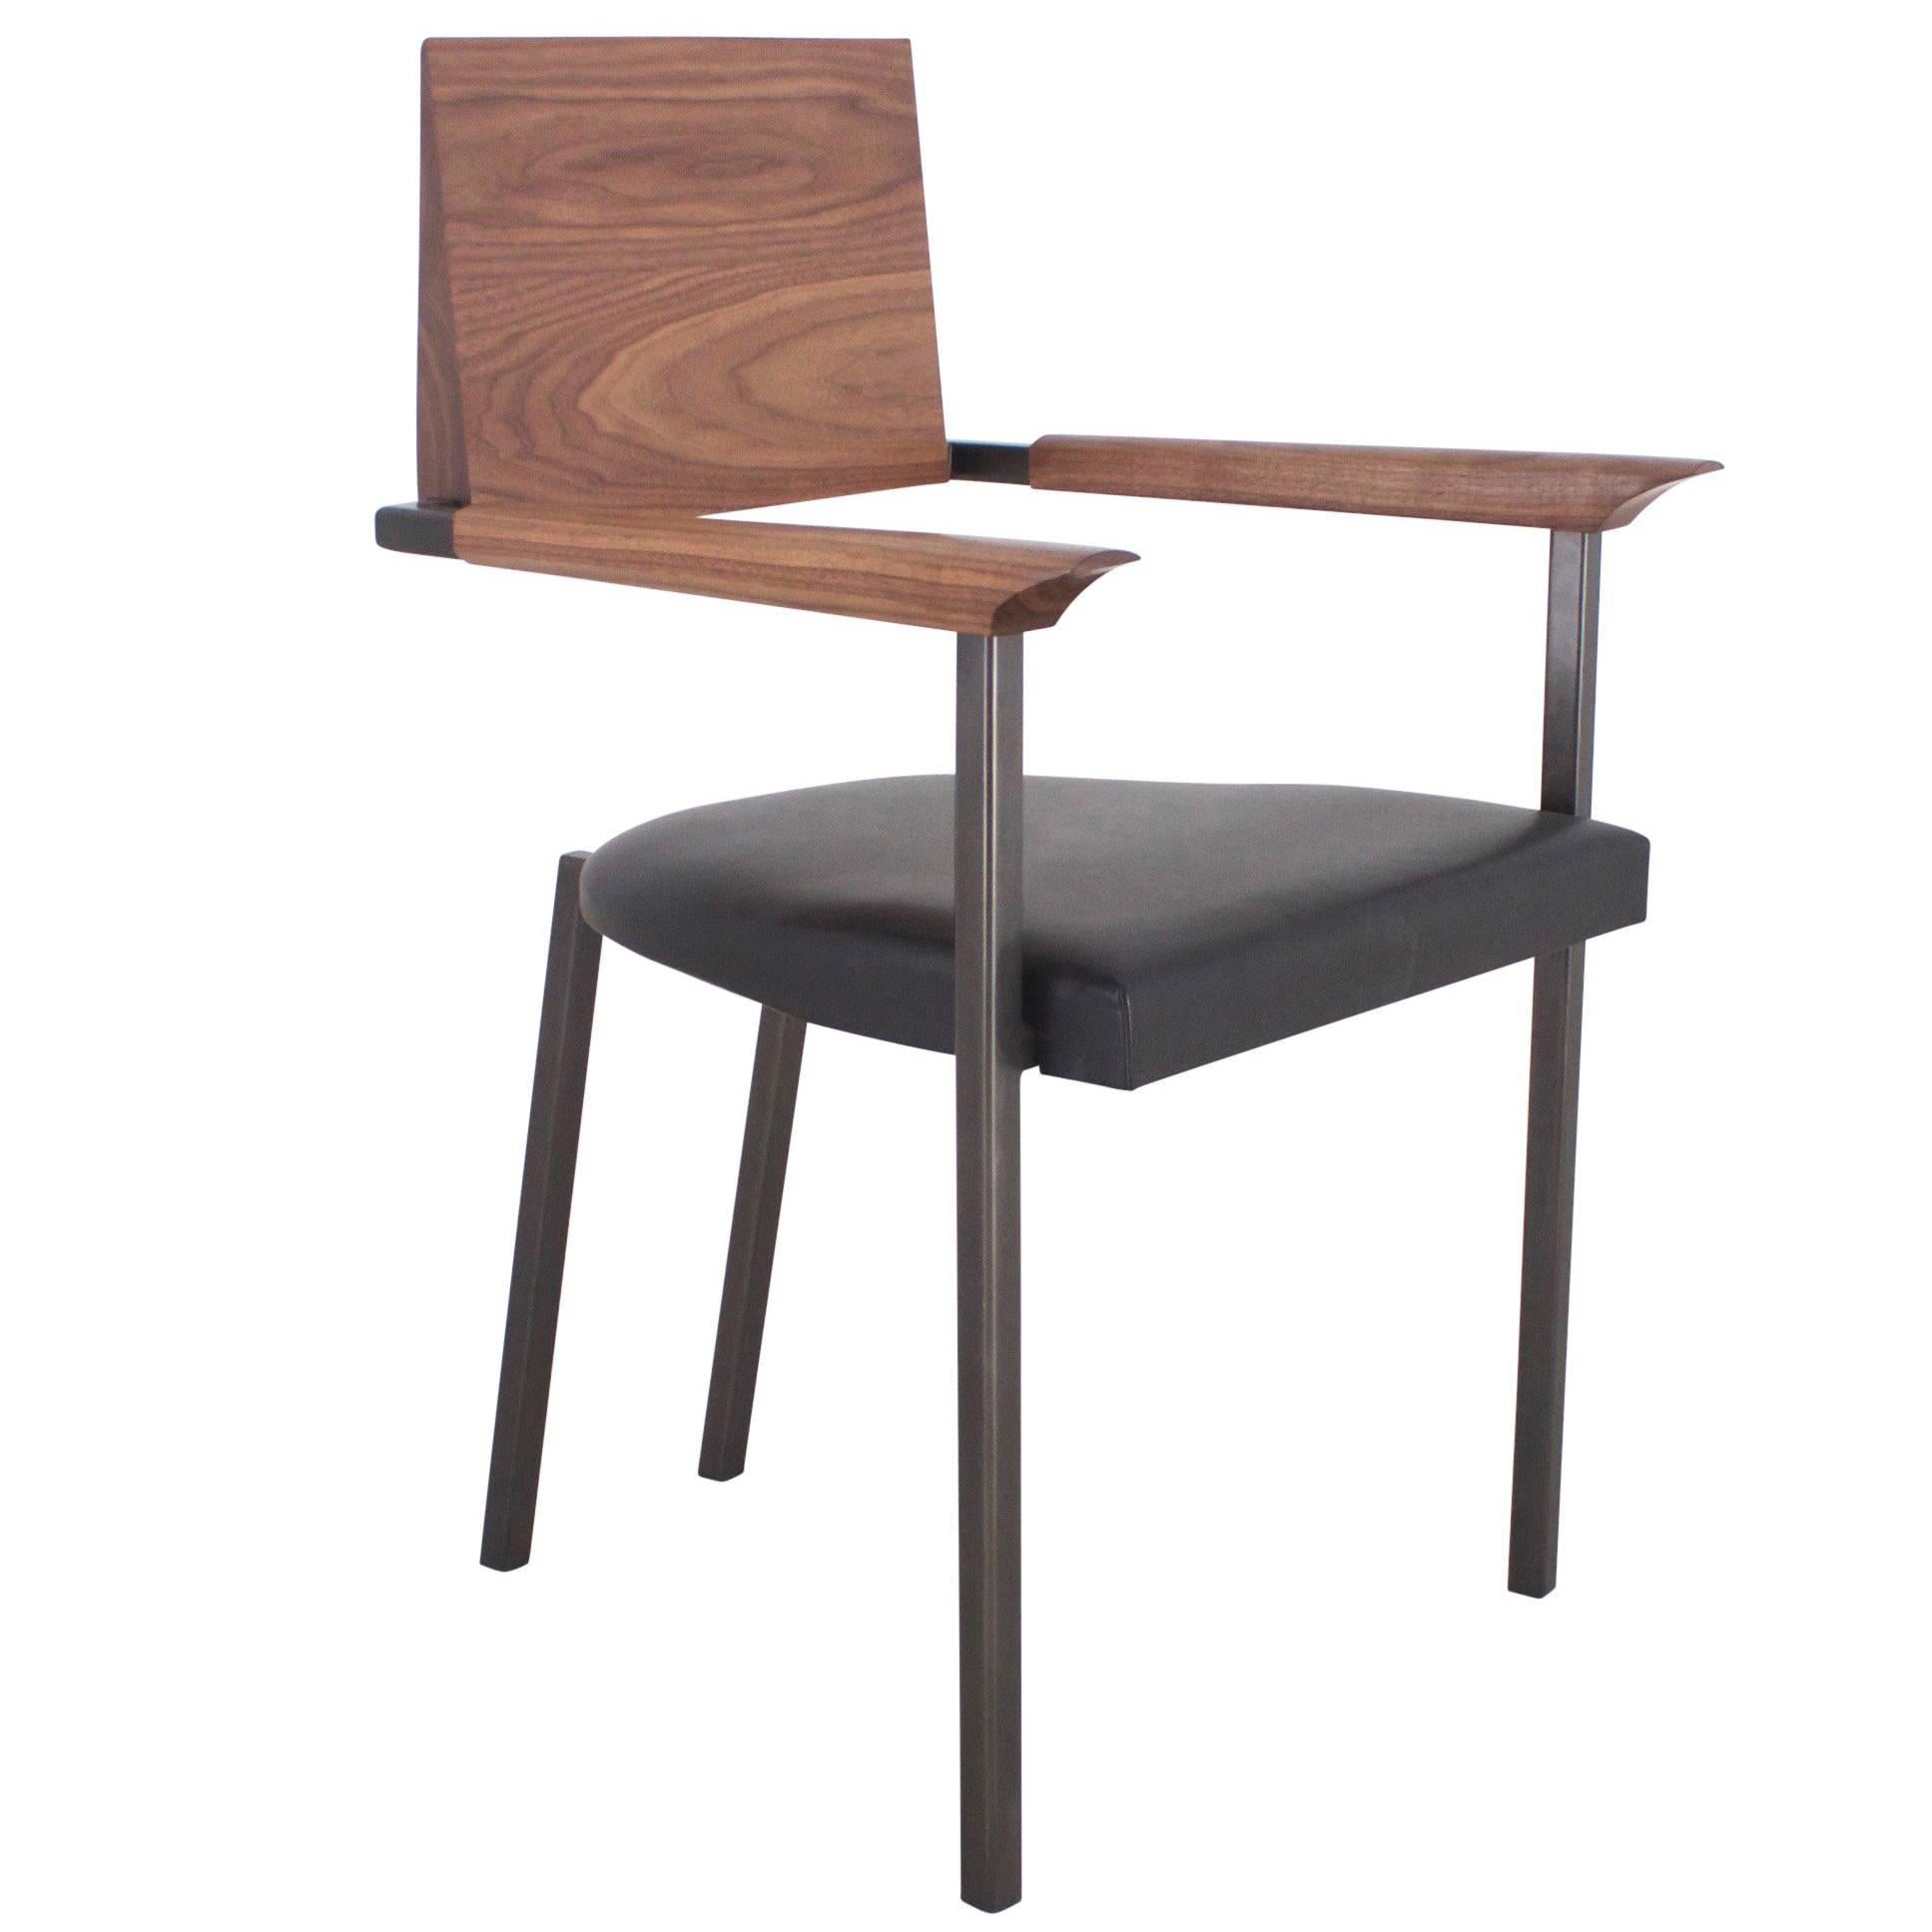 Massiv handgeformter Stuhl aus Nussbaumholz, geschwärztem Stahl und Leder „“ Gepolsterter Stahlstuhl“